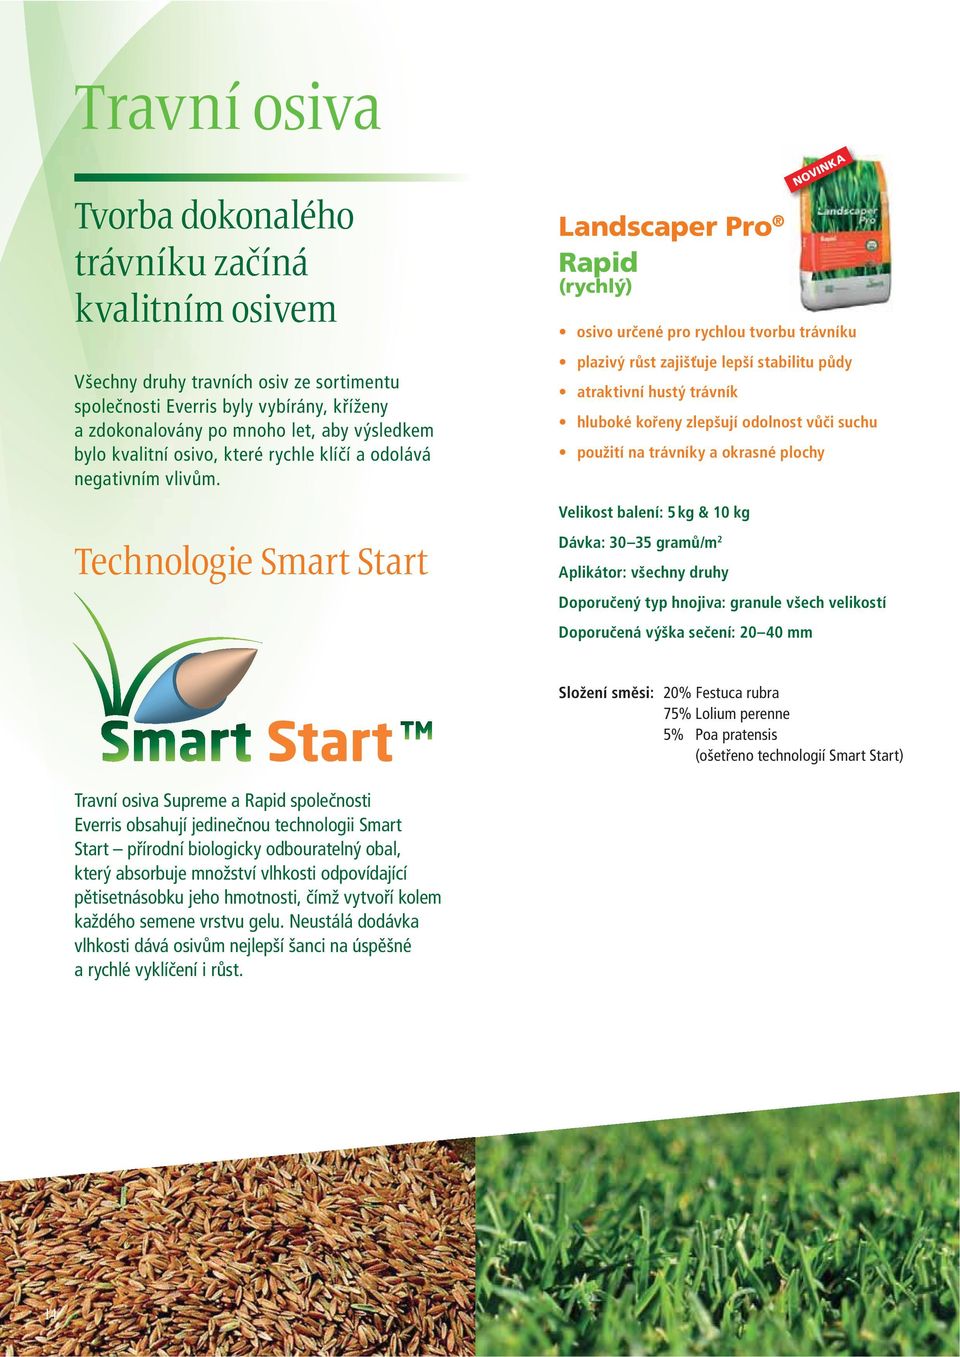 Technologie Smart Start Landscaper Pro Rapid (rychlý) osivo určené pro rychlou tvorbu trávníku plazivý růst zajišťuje lepší stabilitu půdy atraktivní hustý trávník hluboké kořeny zlepšují odolnost